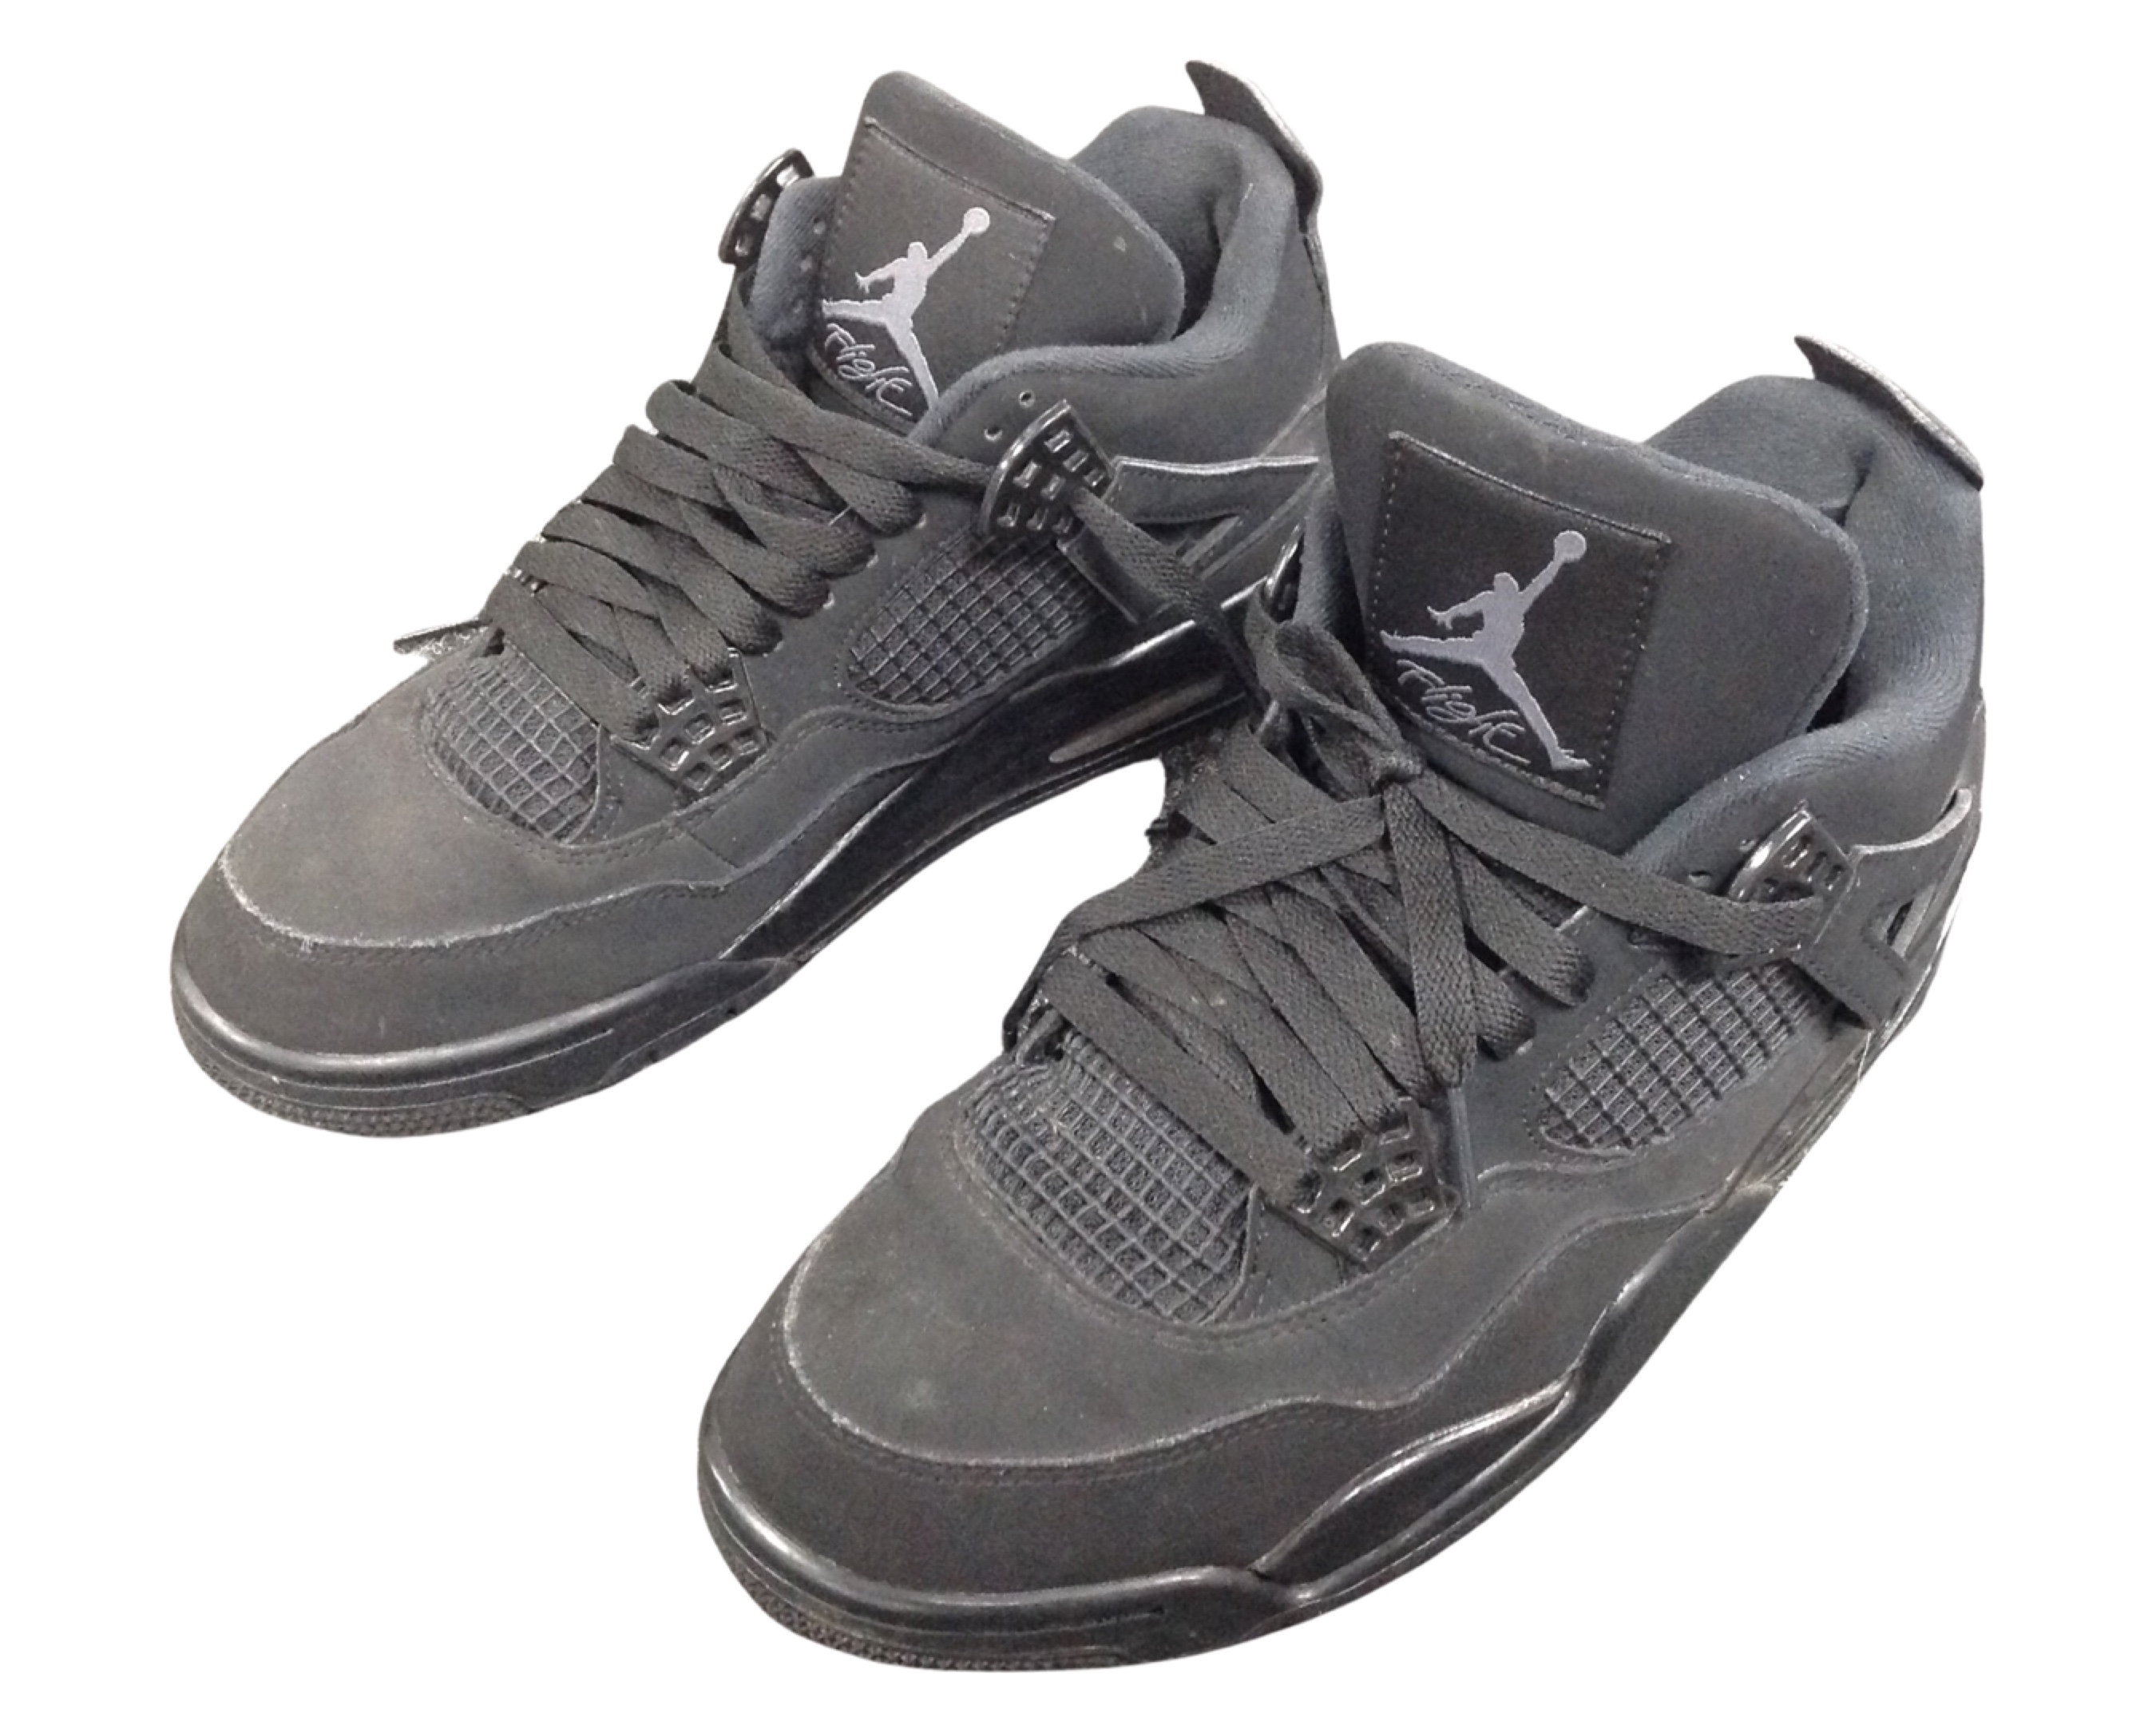 A pair of black Nike Air Flight sneakers.